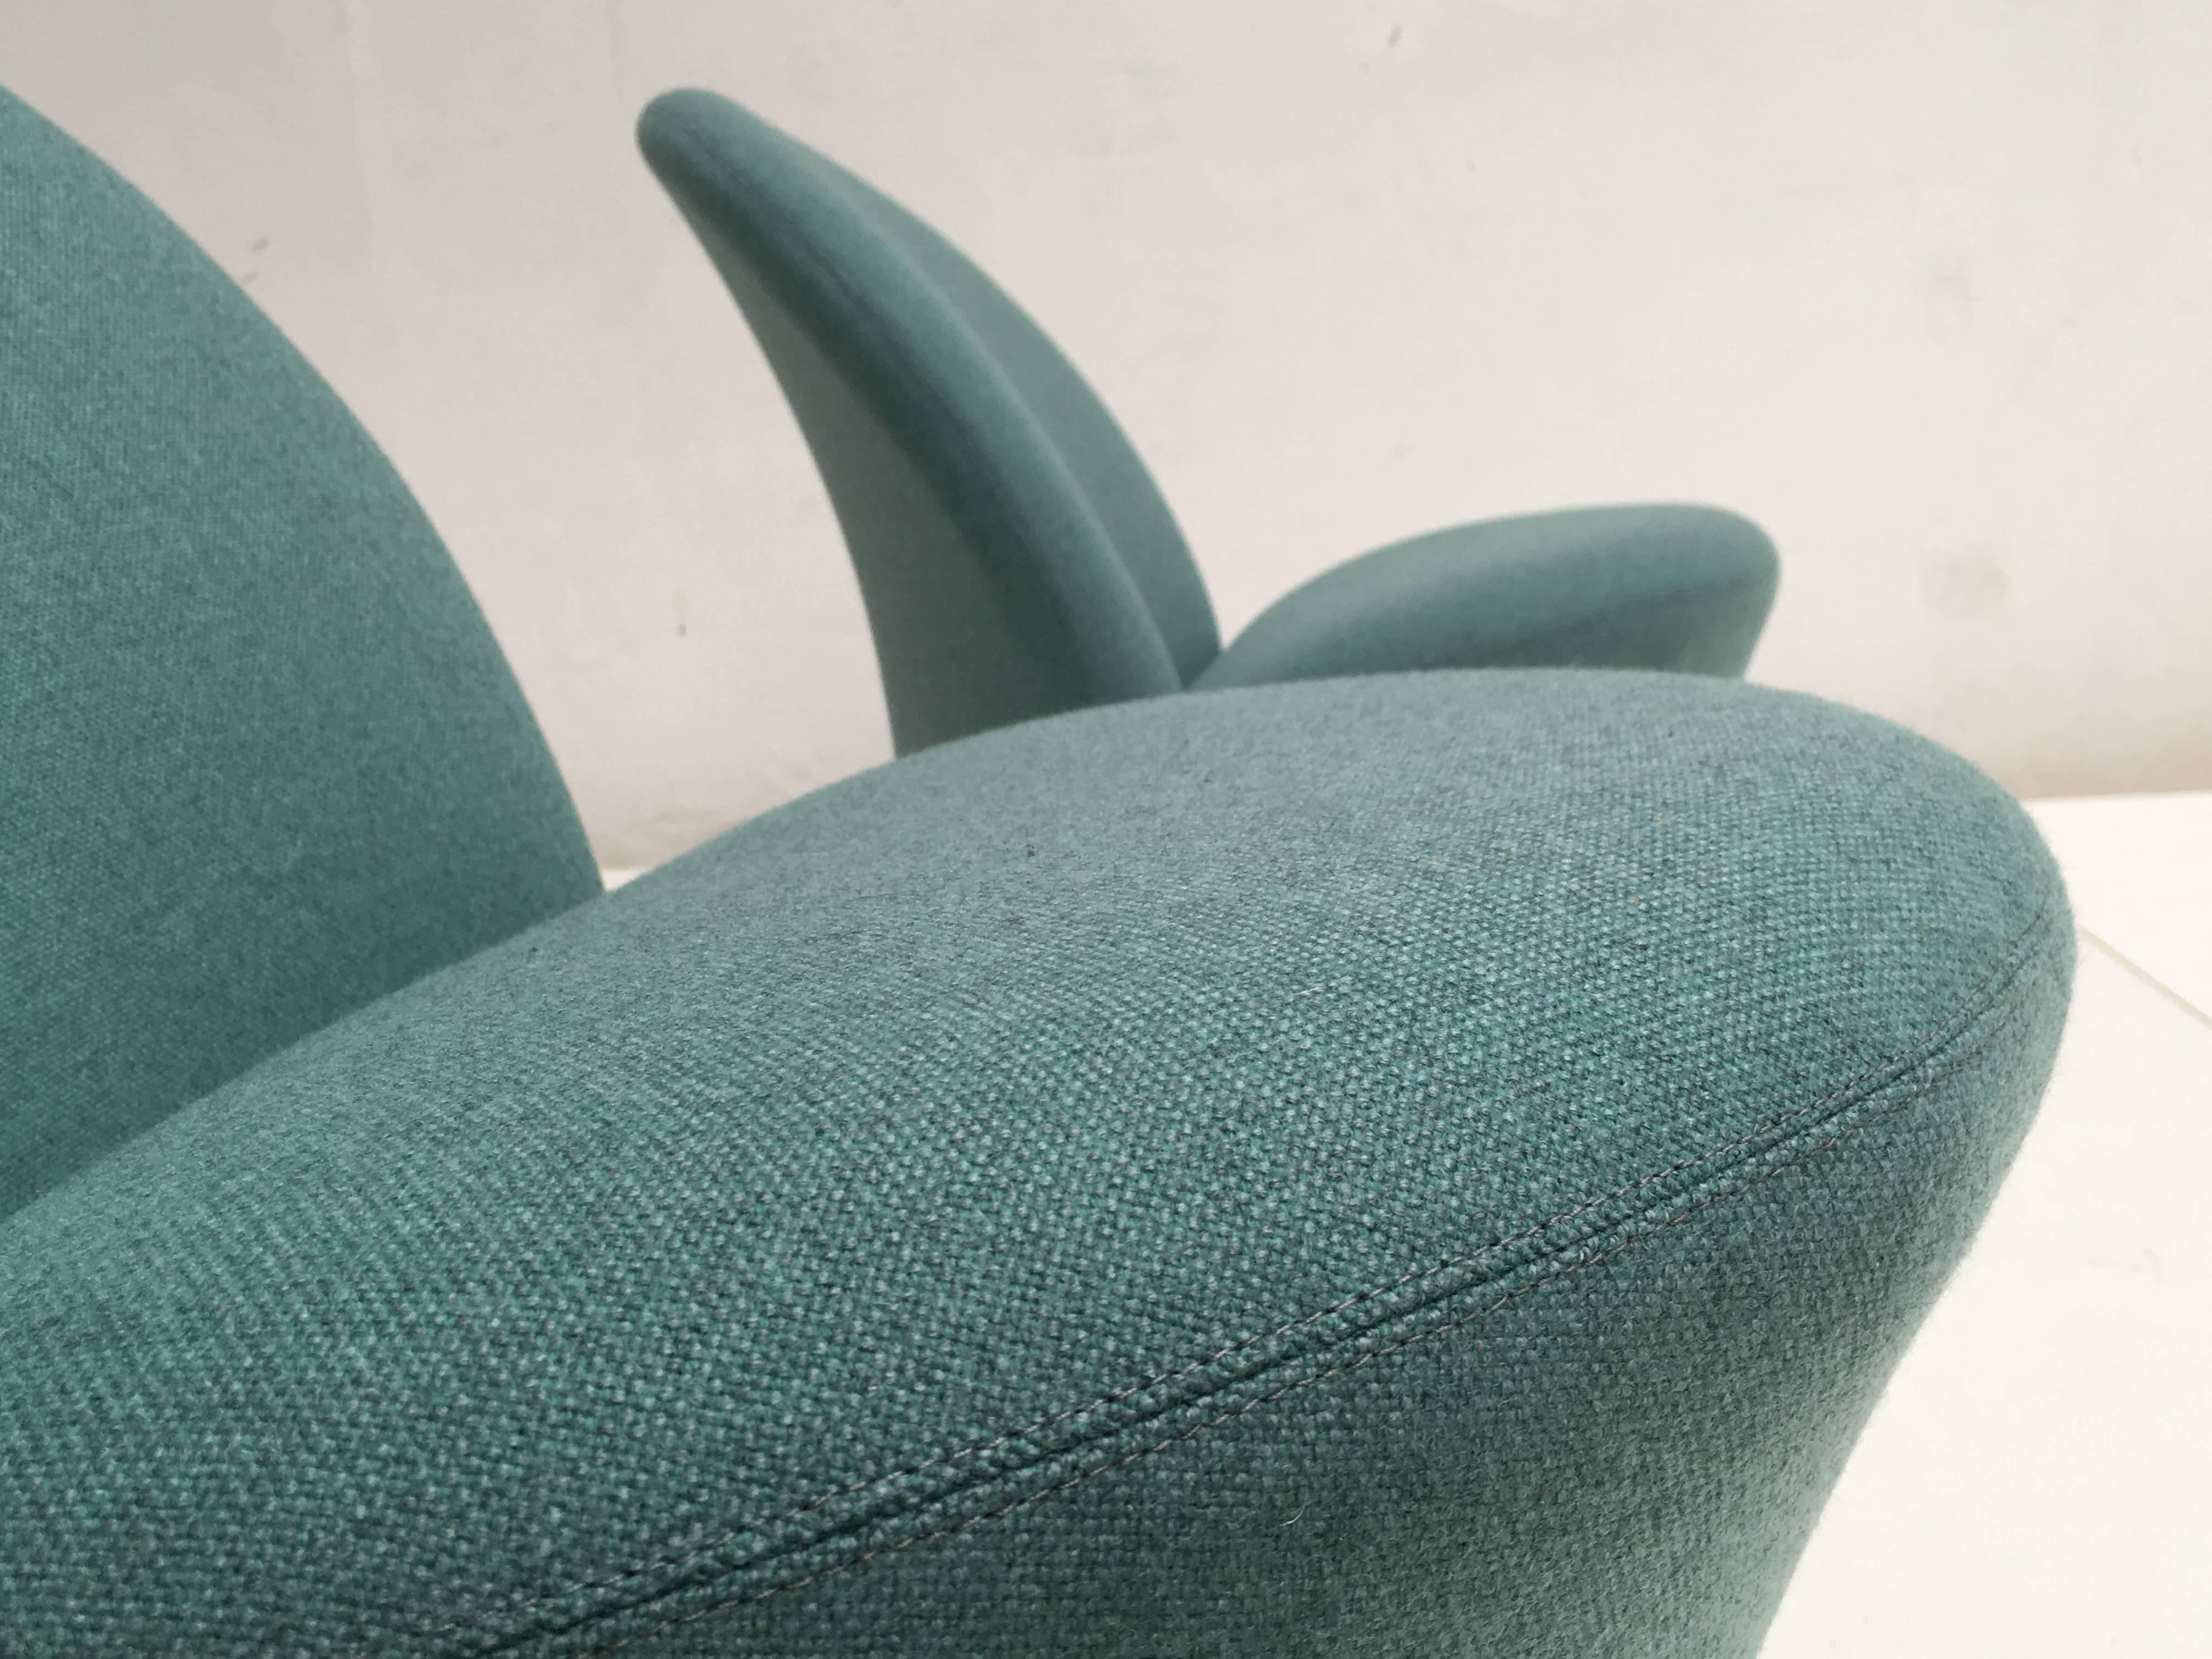 Rare Pair of Pierre Paulin F572 Chair for Artifort 1967 Aqua Marine Ploeg Wool In Excellent Condition In bergen op zoom, NL